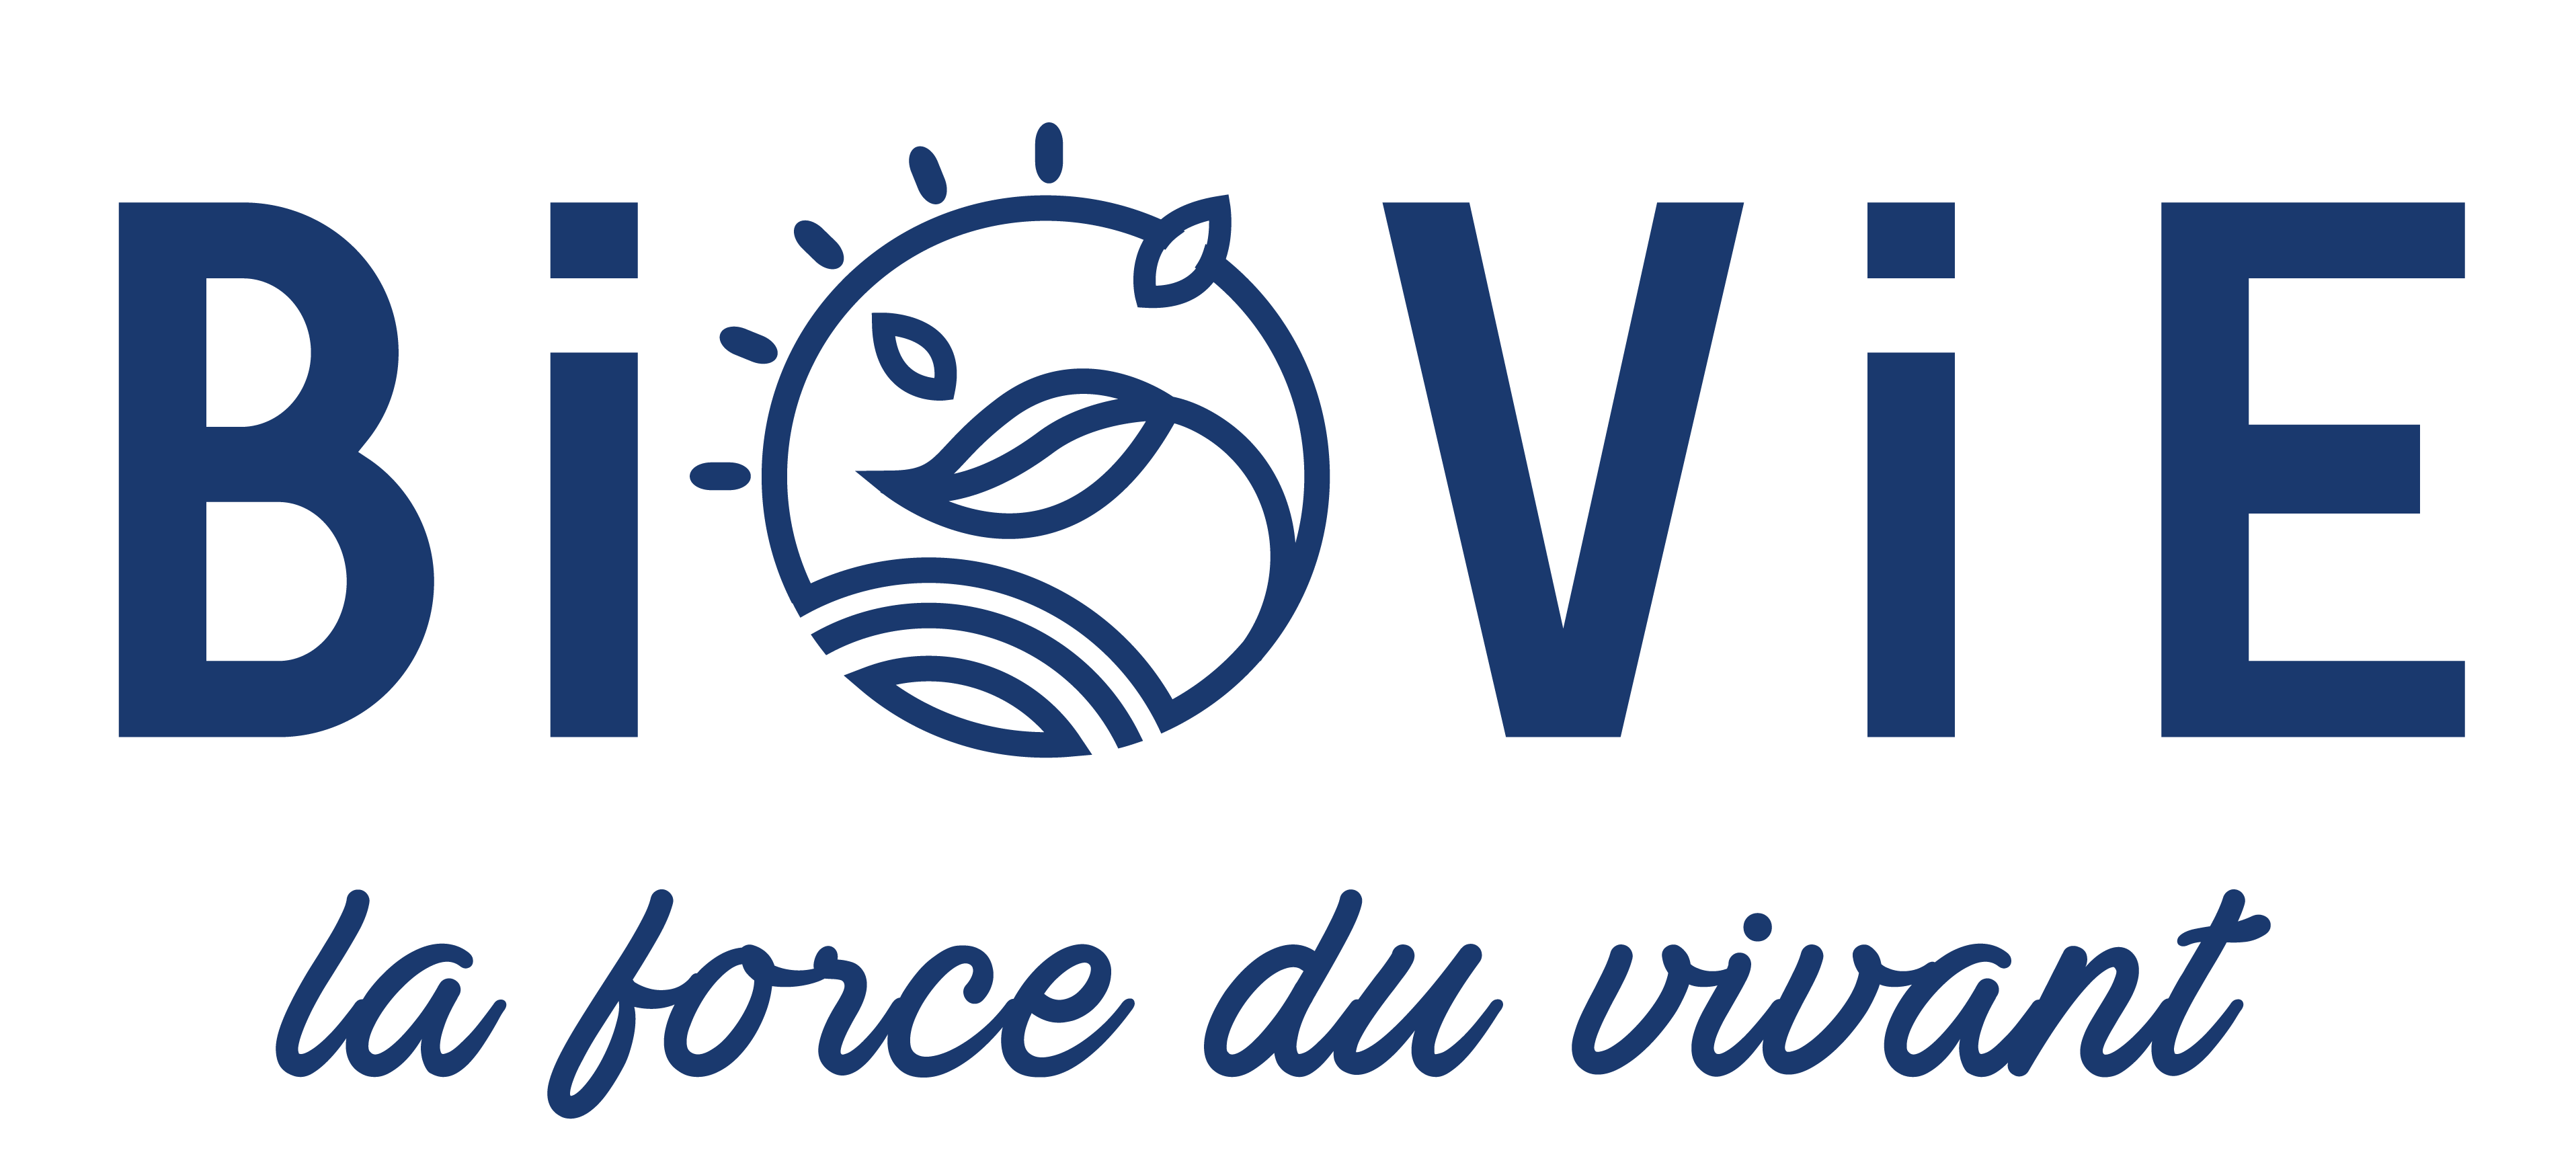 Logo BioVie